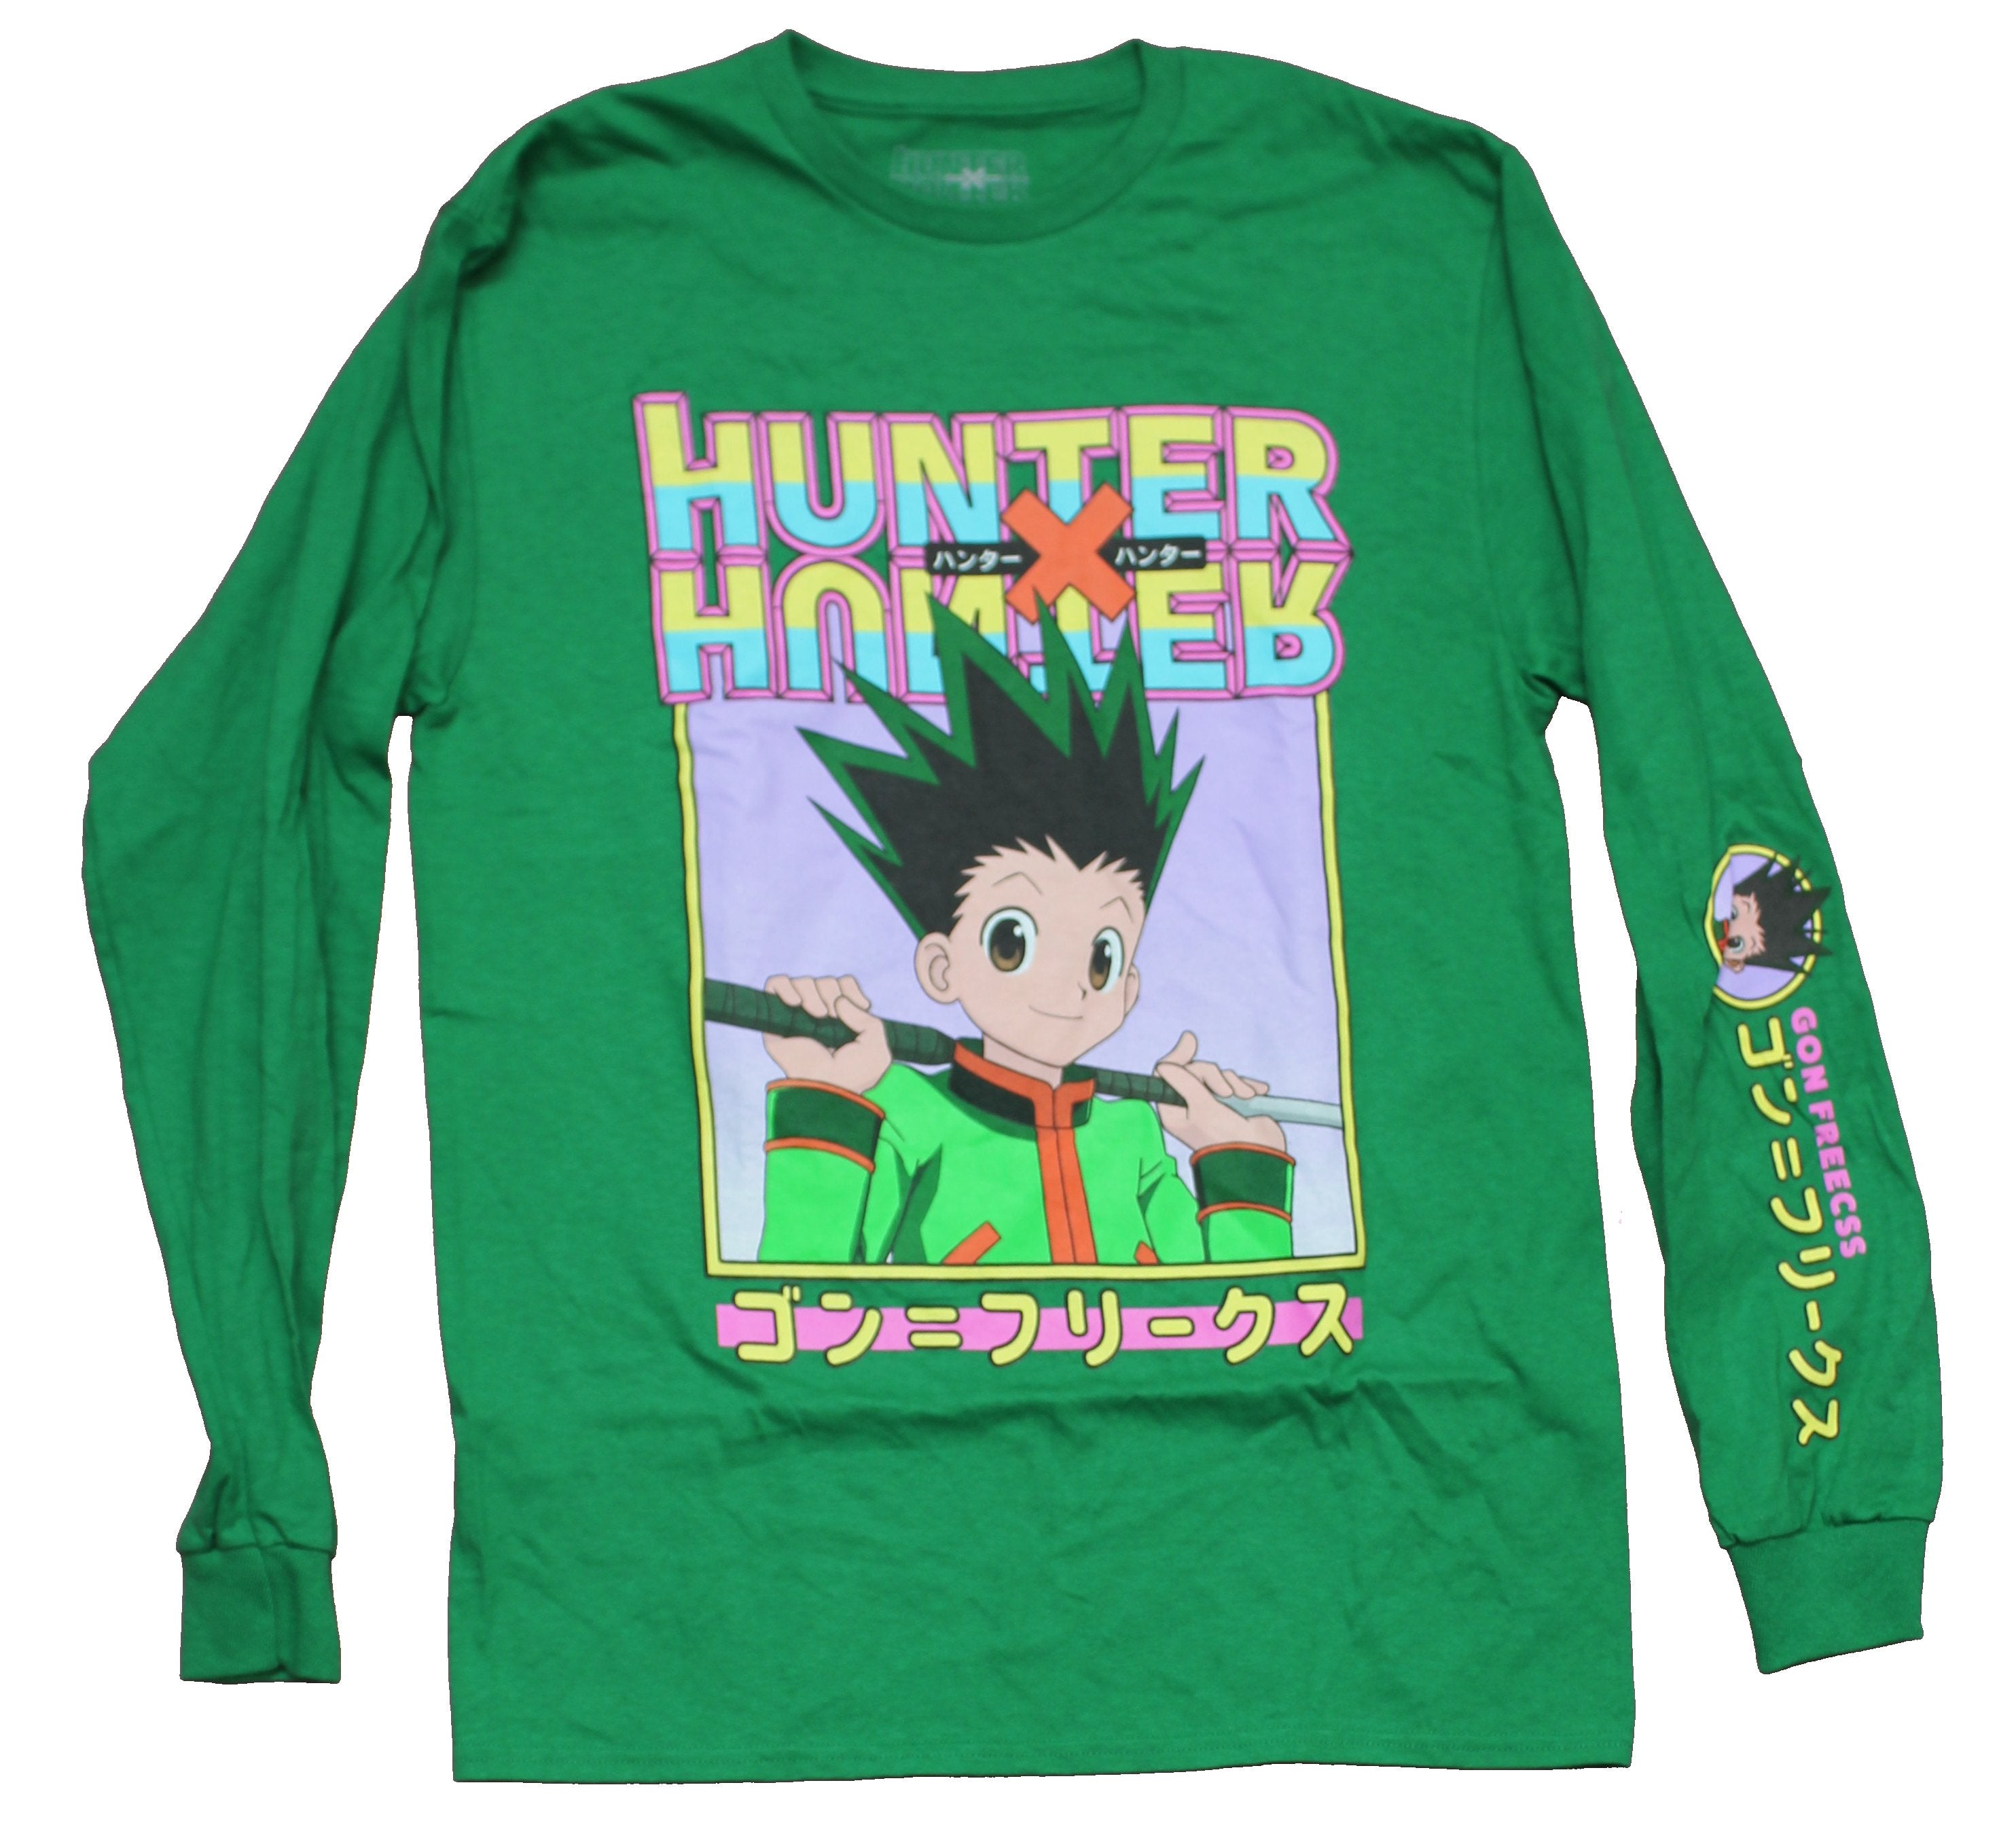 Hunter x Hunter Merch  Hunter x Hunter Fans Merchandise